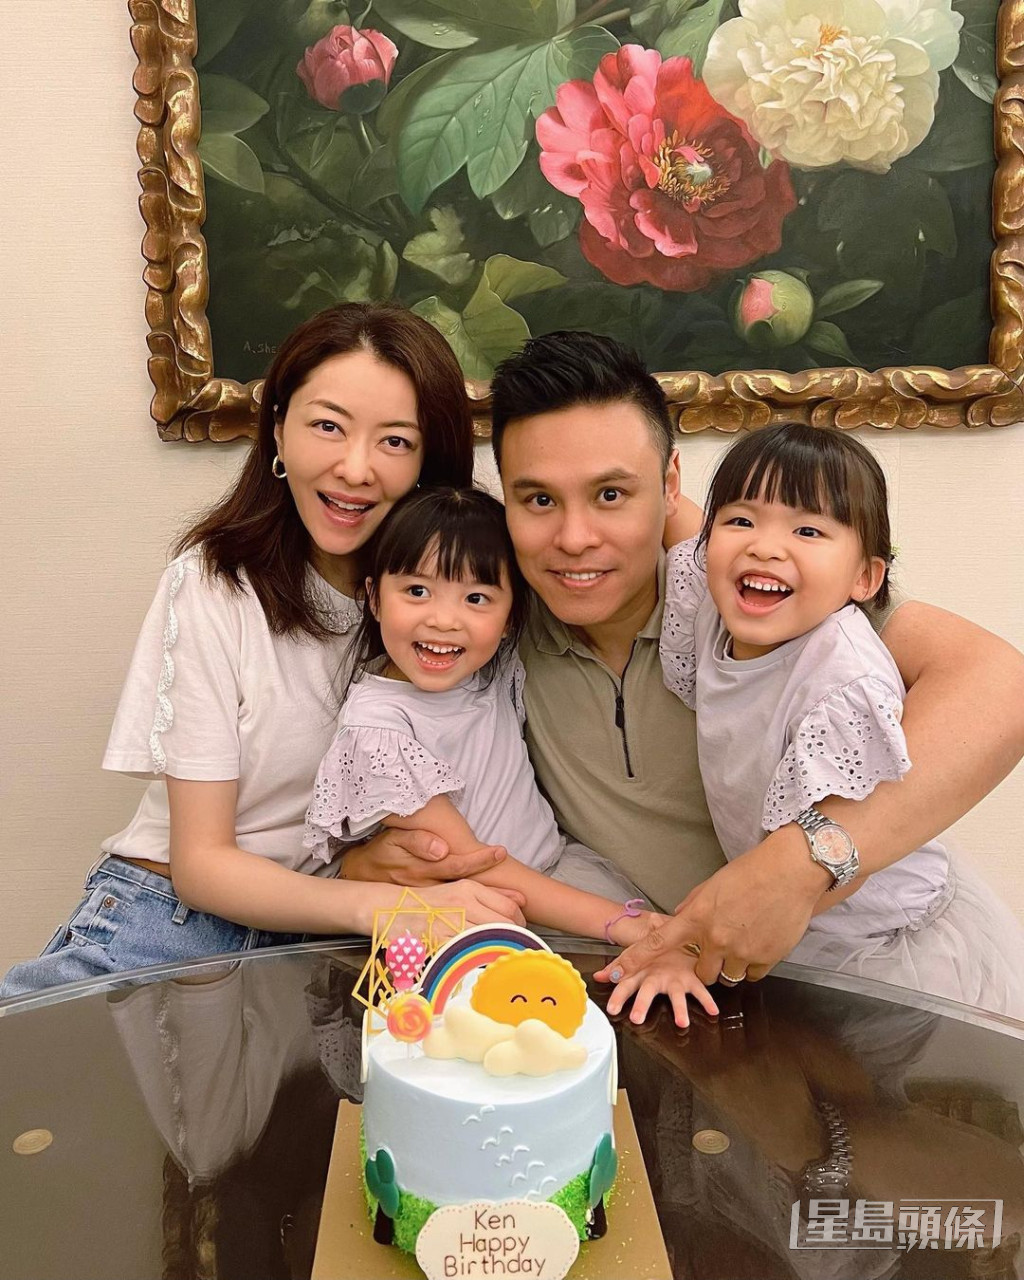 熊黛林与郭富颂2016年结婚，翌年诞下一对可爱孖女。